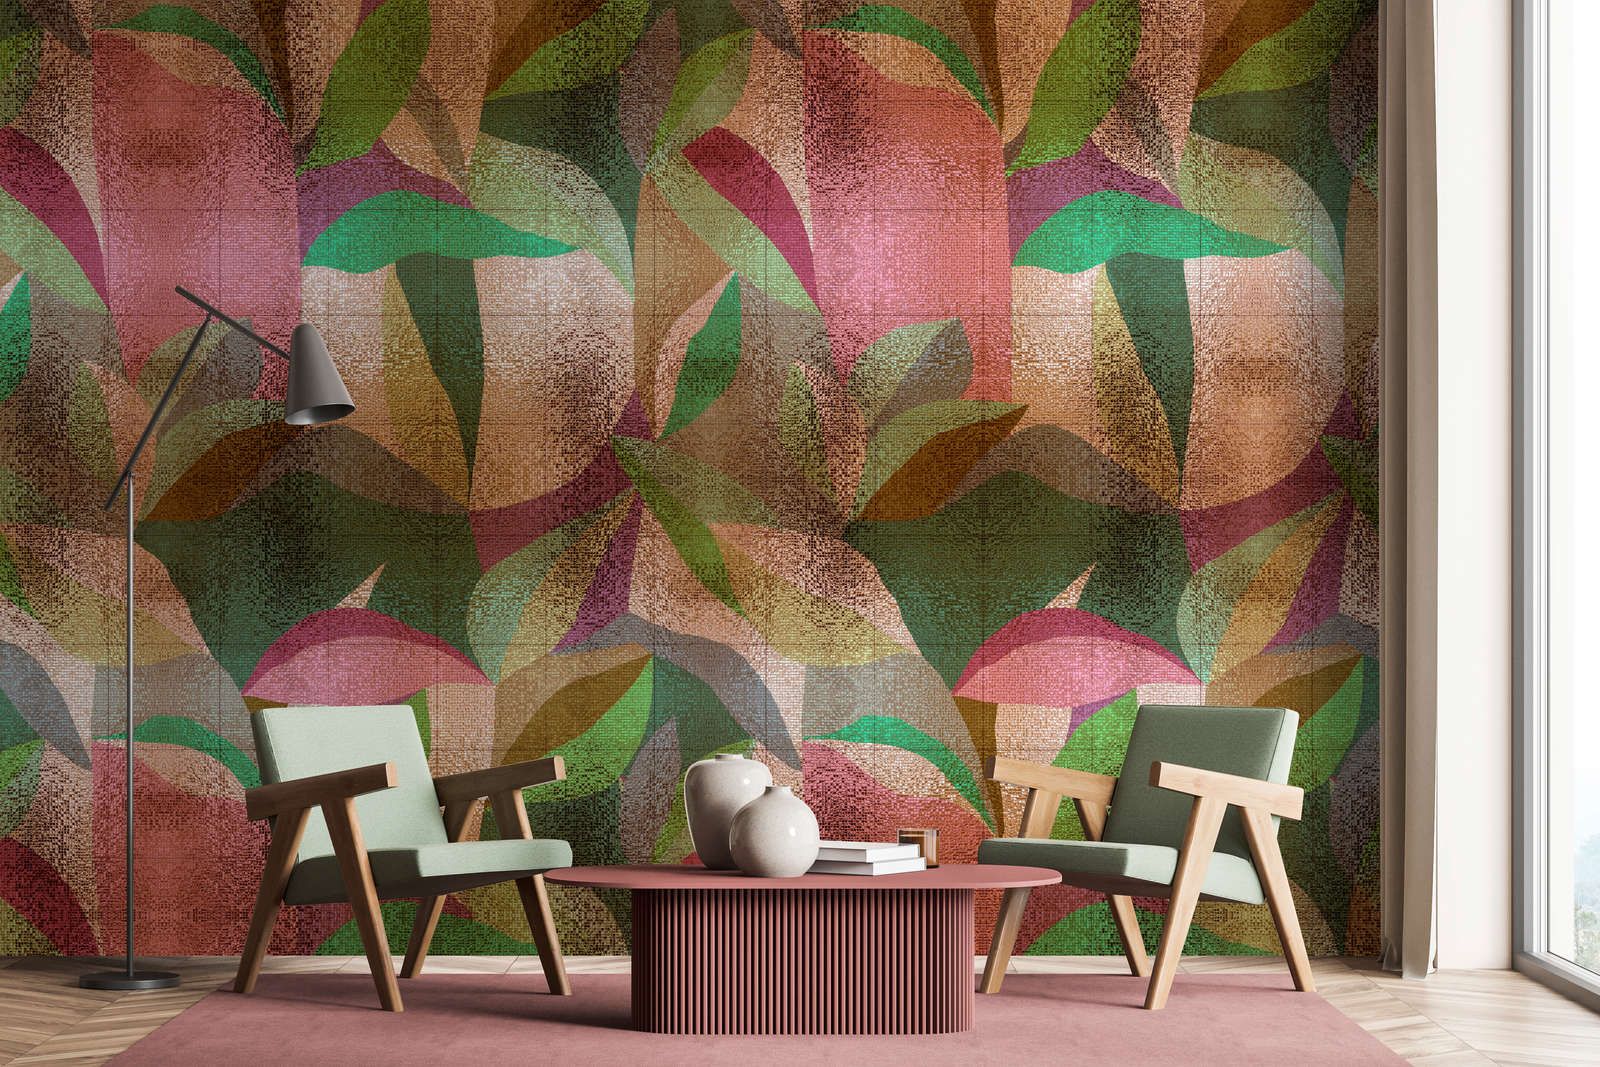             Digital behang »grandezza« - Abstract kleurrijk bladontwerp met mozaïekstructuur - Gladde, licht parelmoerglanzende vliesstof
        